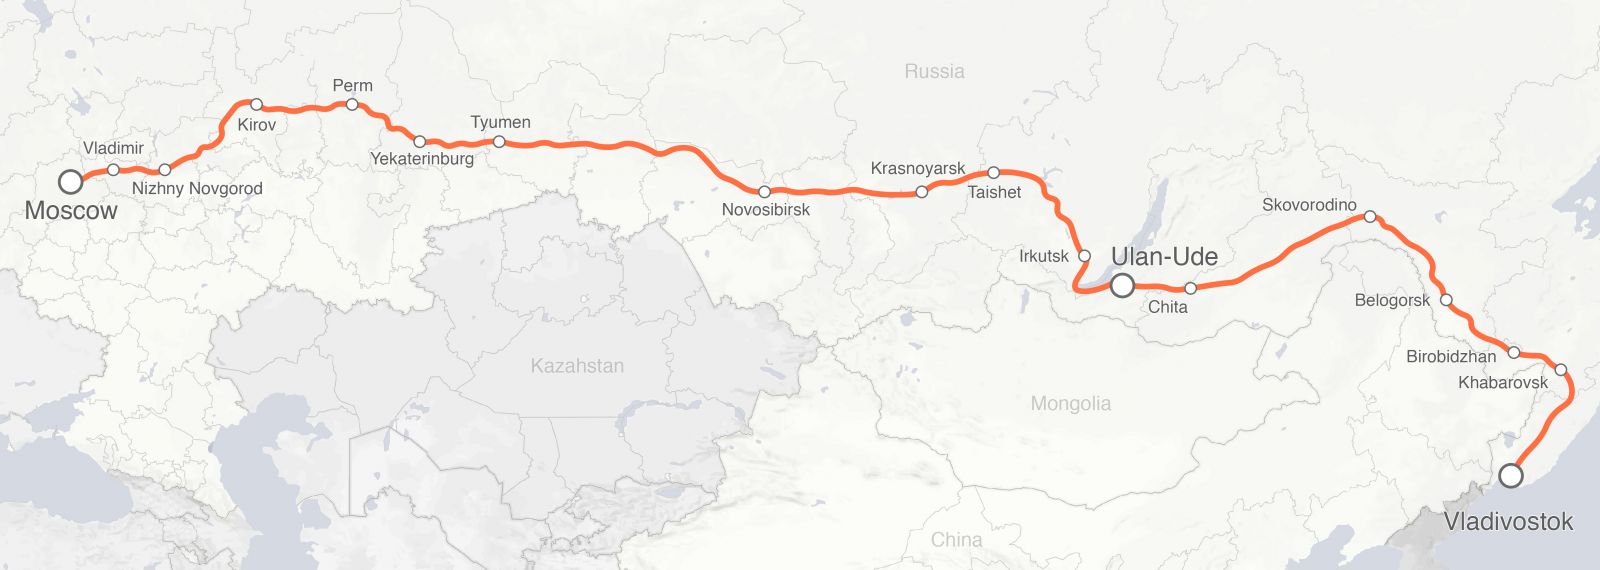 Moscow-Vladivostok route